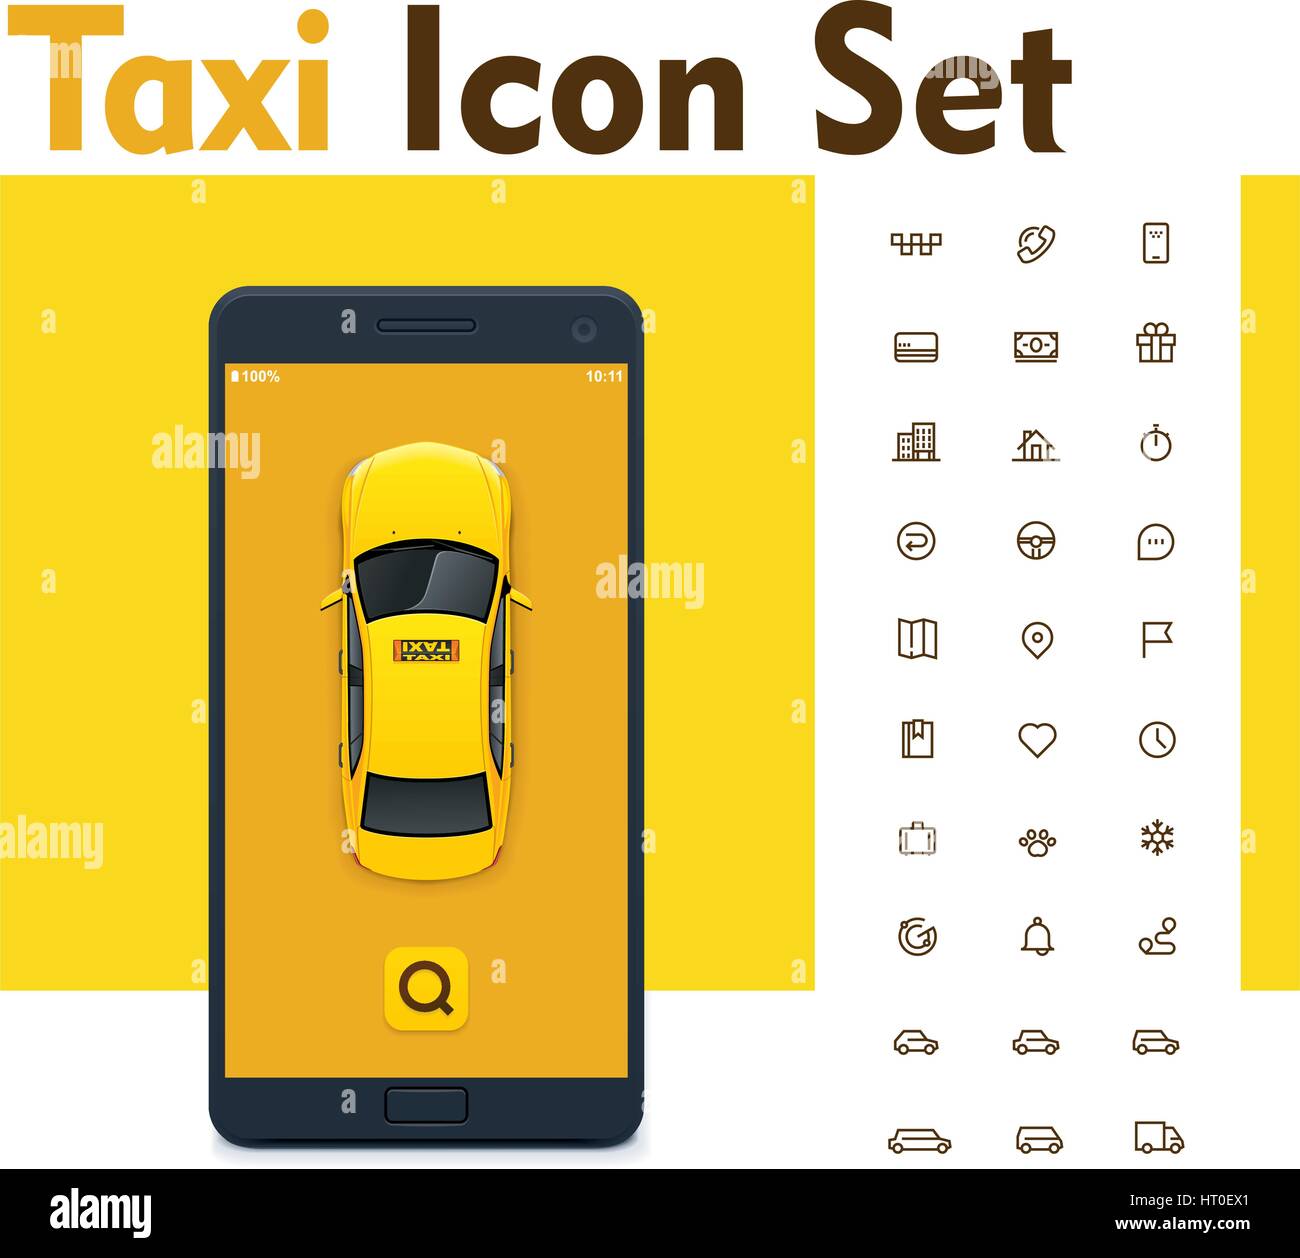 Vektor-Taxi-mobile app-Icon-set Stock Vektor